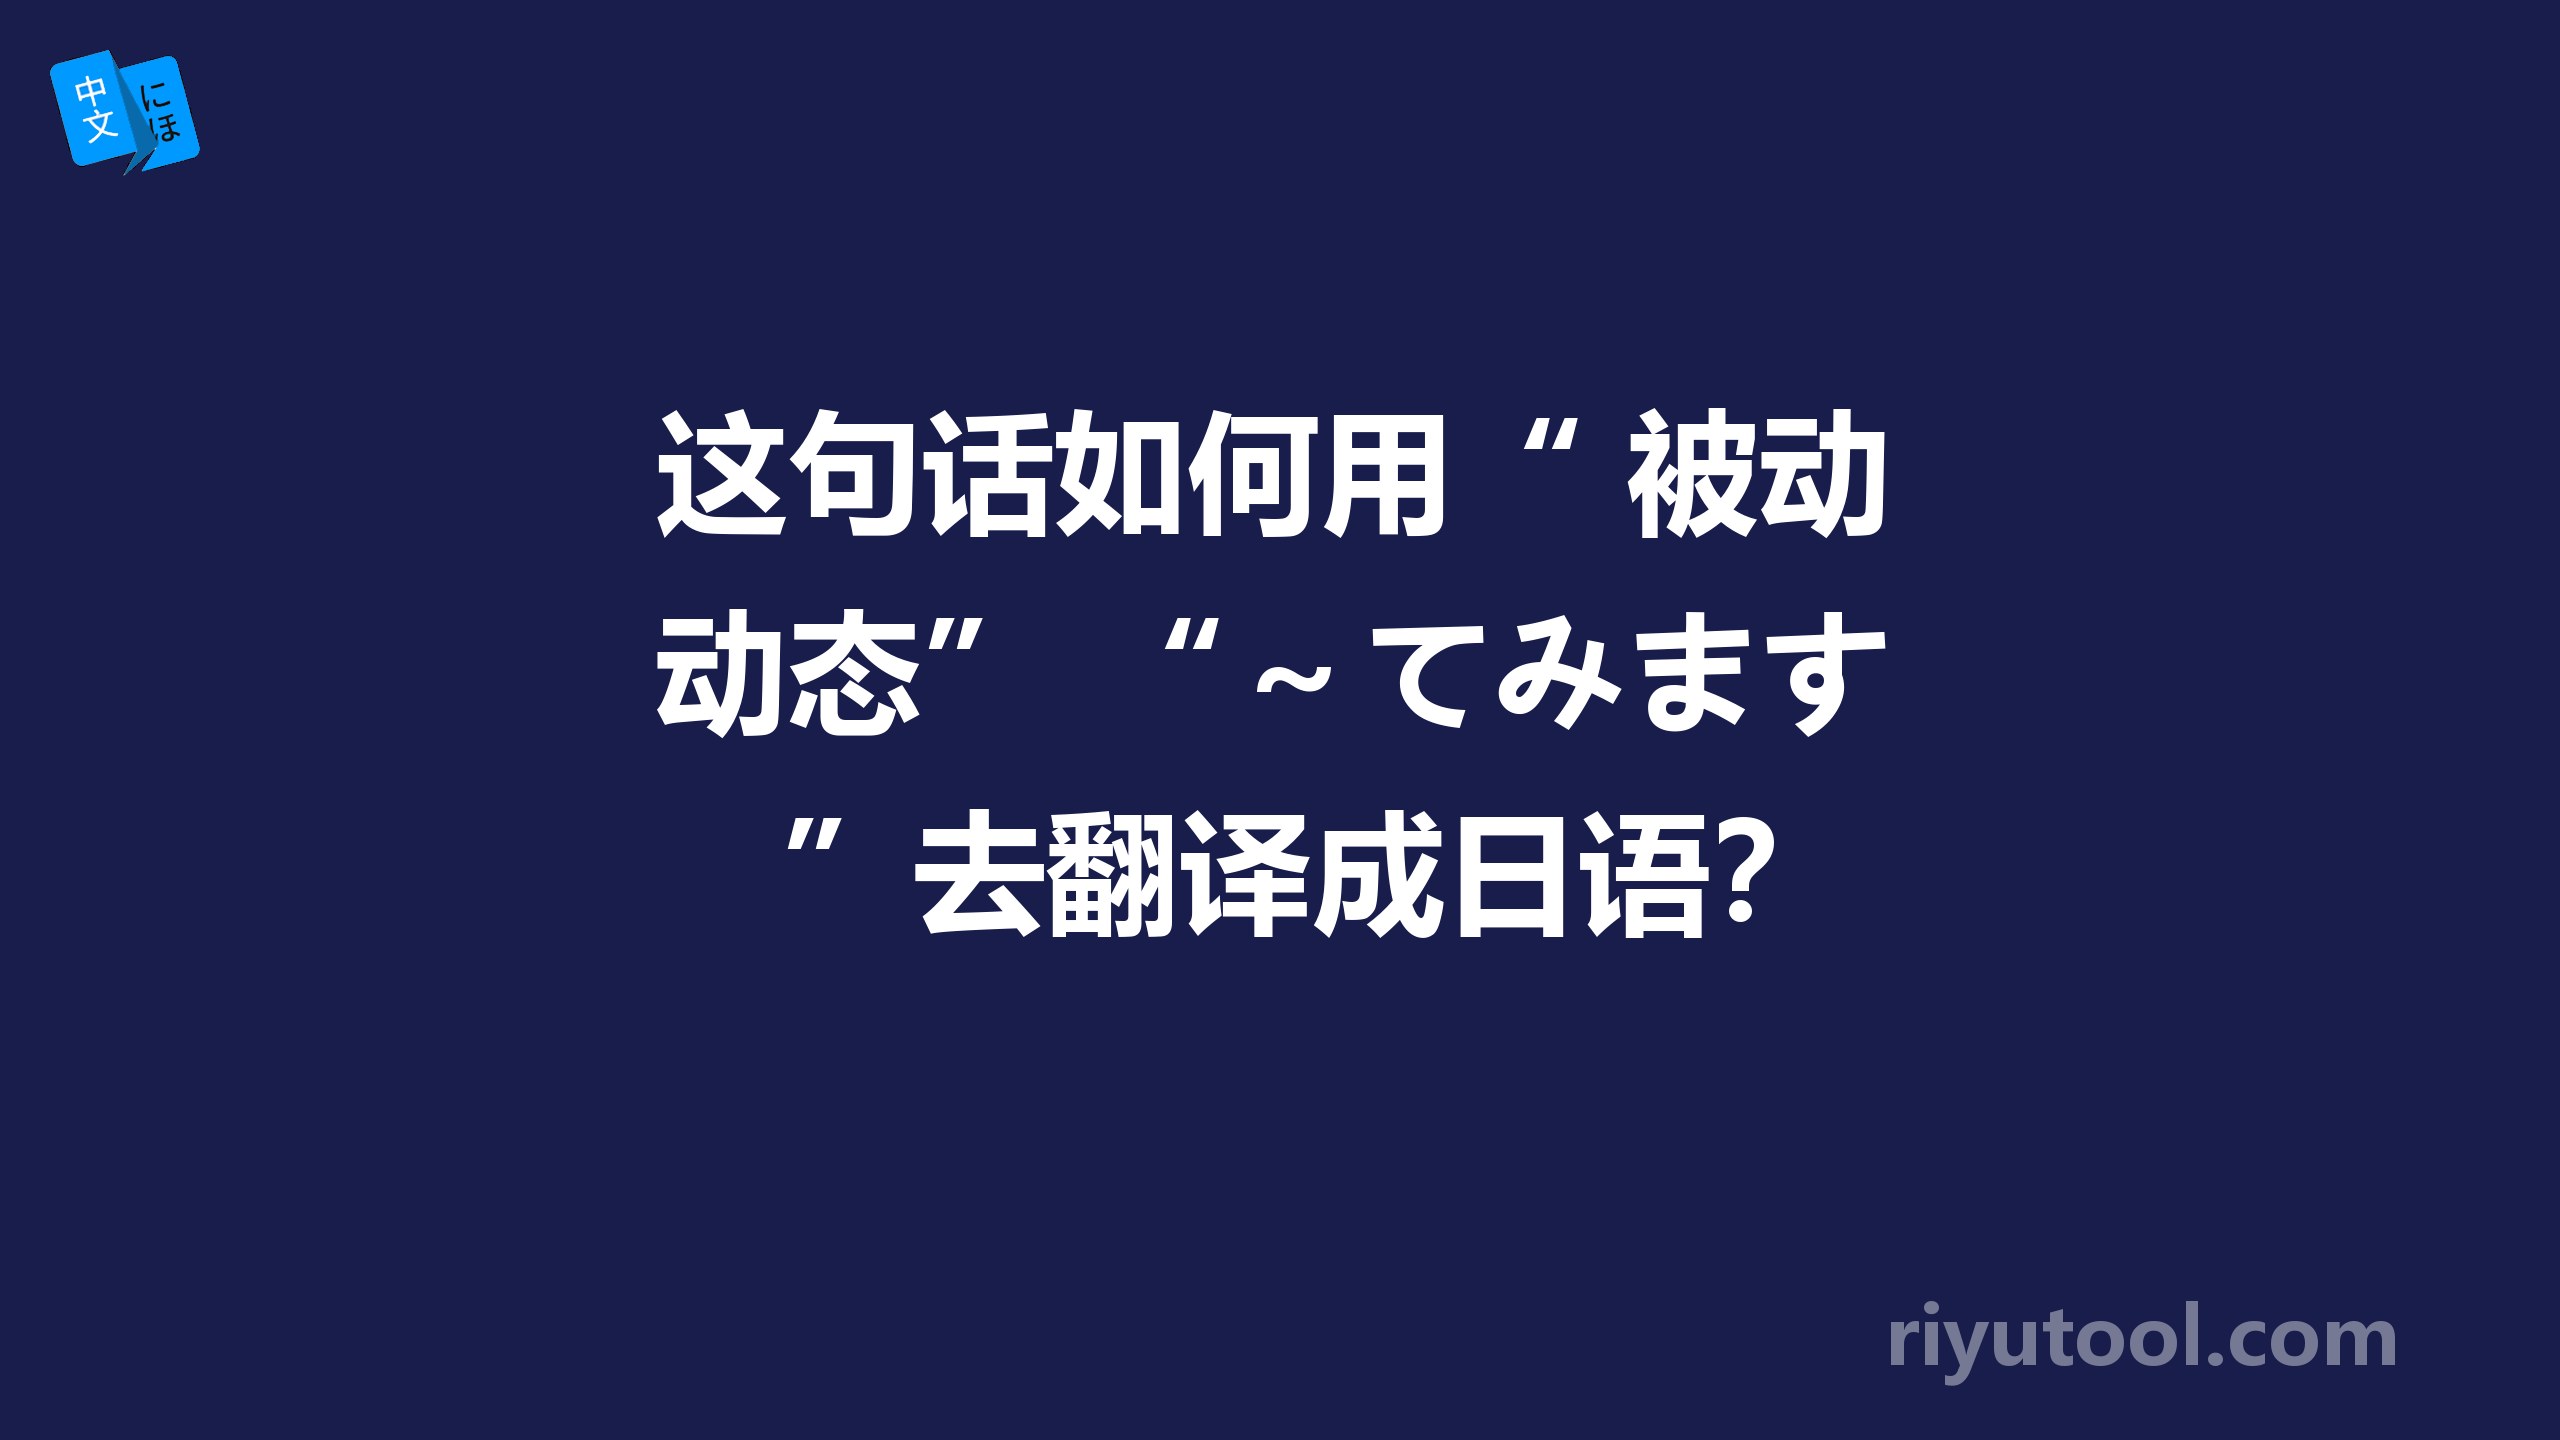 这句话如何用“ 被动态”+“～てみます”去翻译成日语？